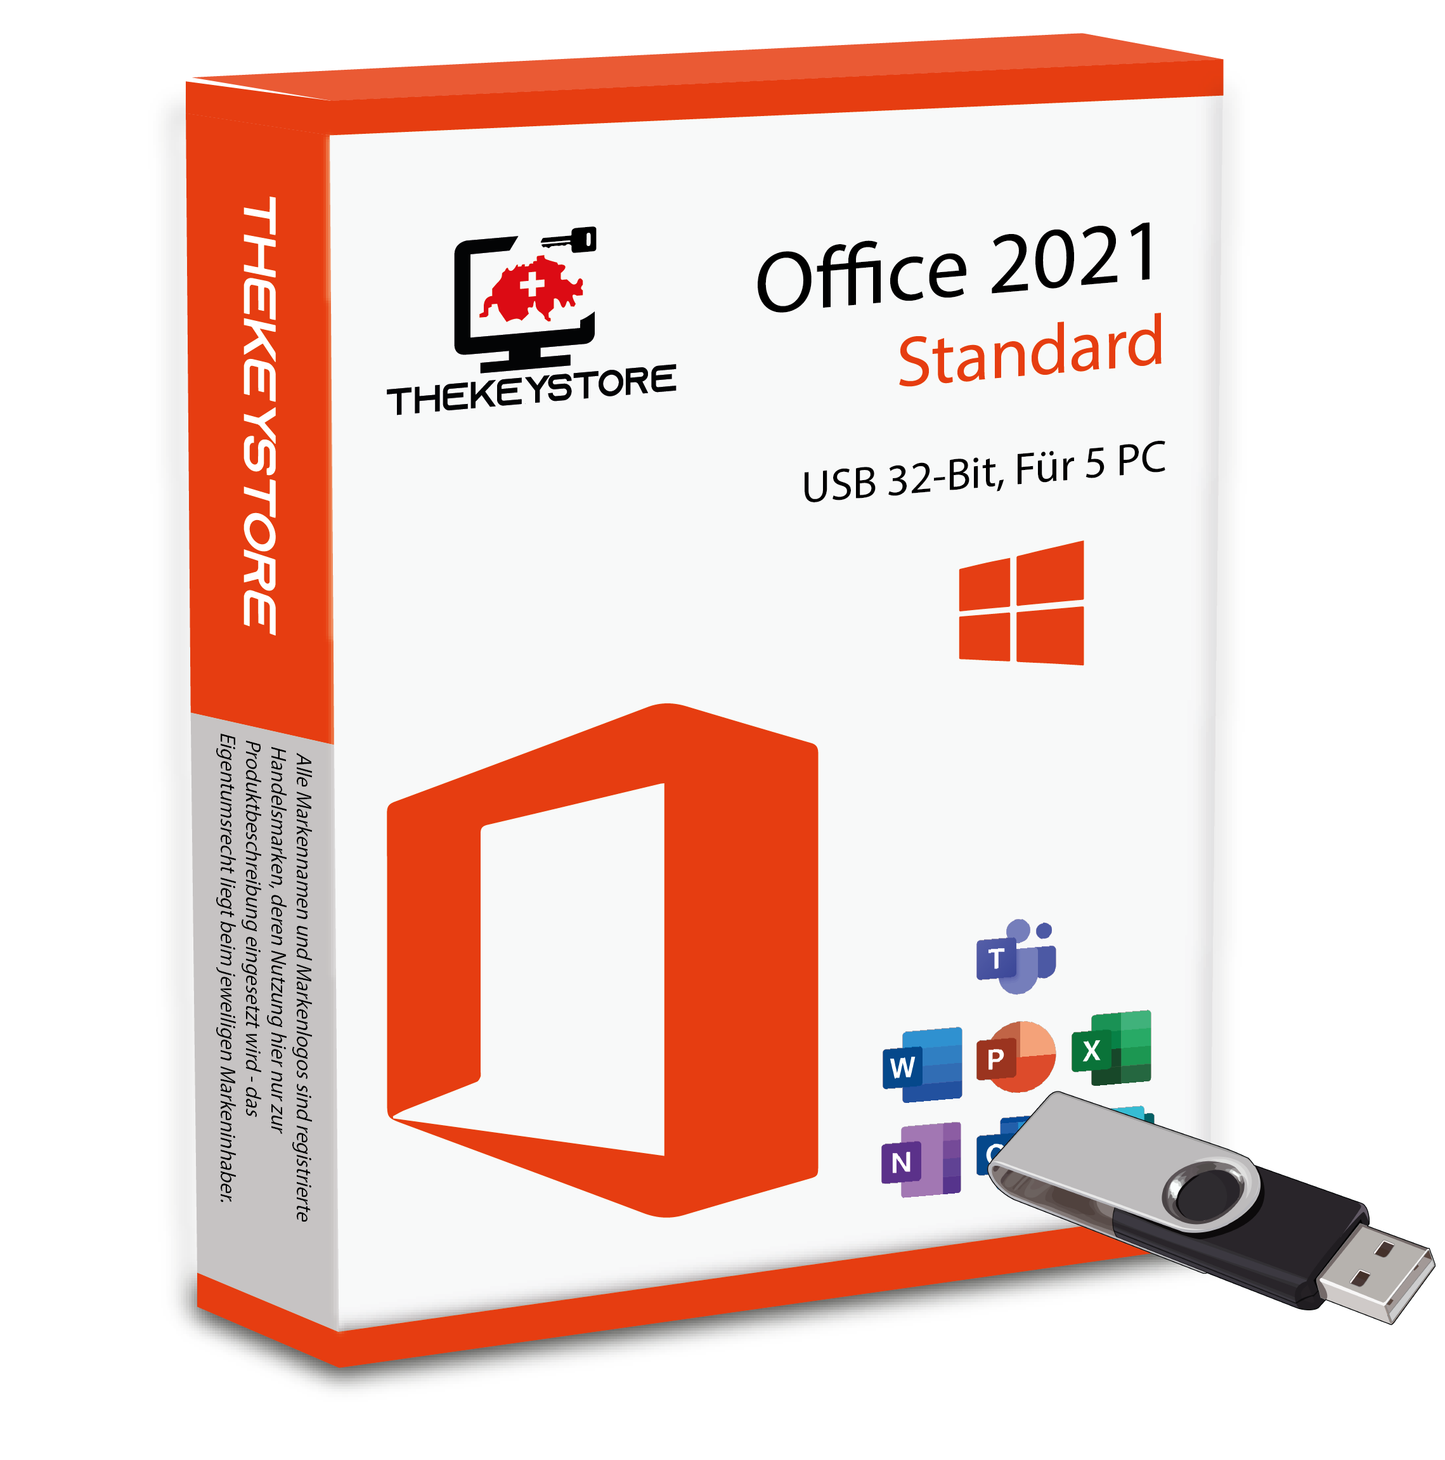 Microsoft Office 2021 Standard - Für 5 PC - TheKeyStore Schweiz